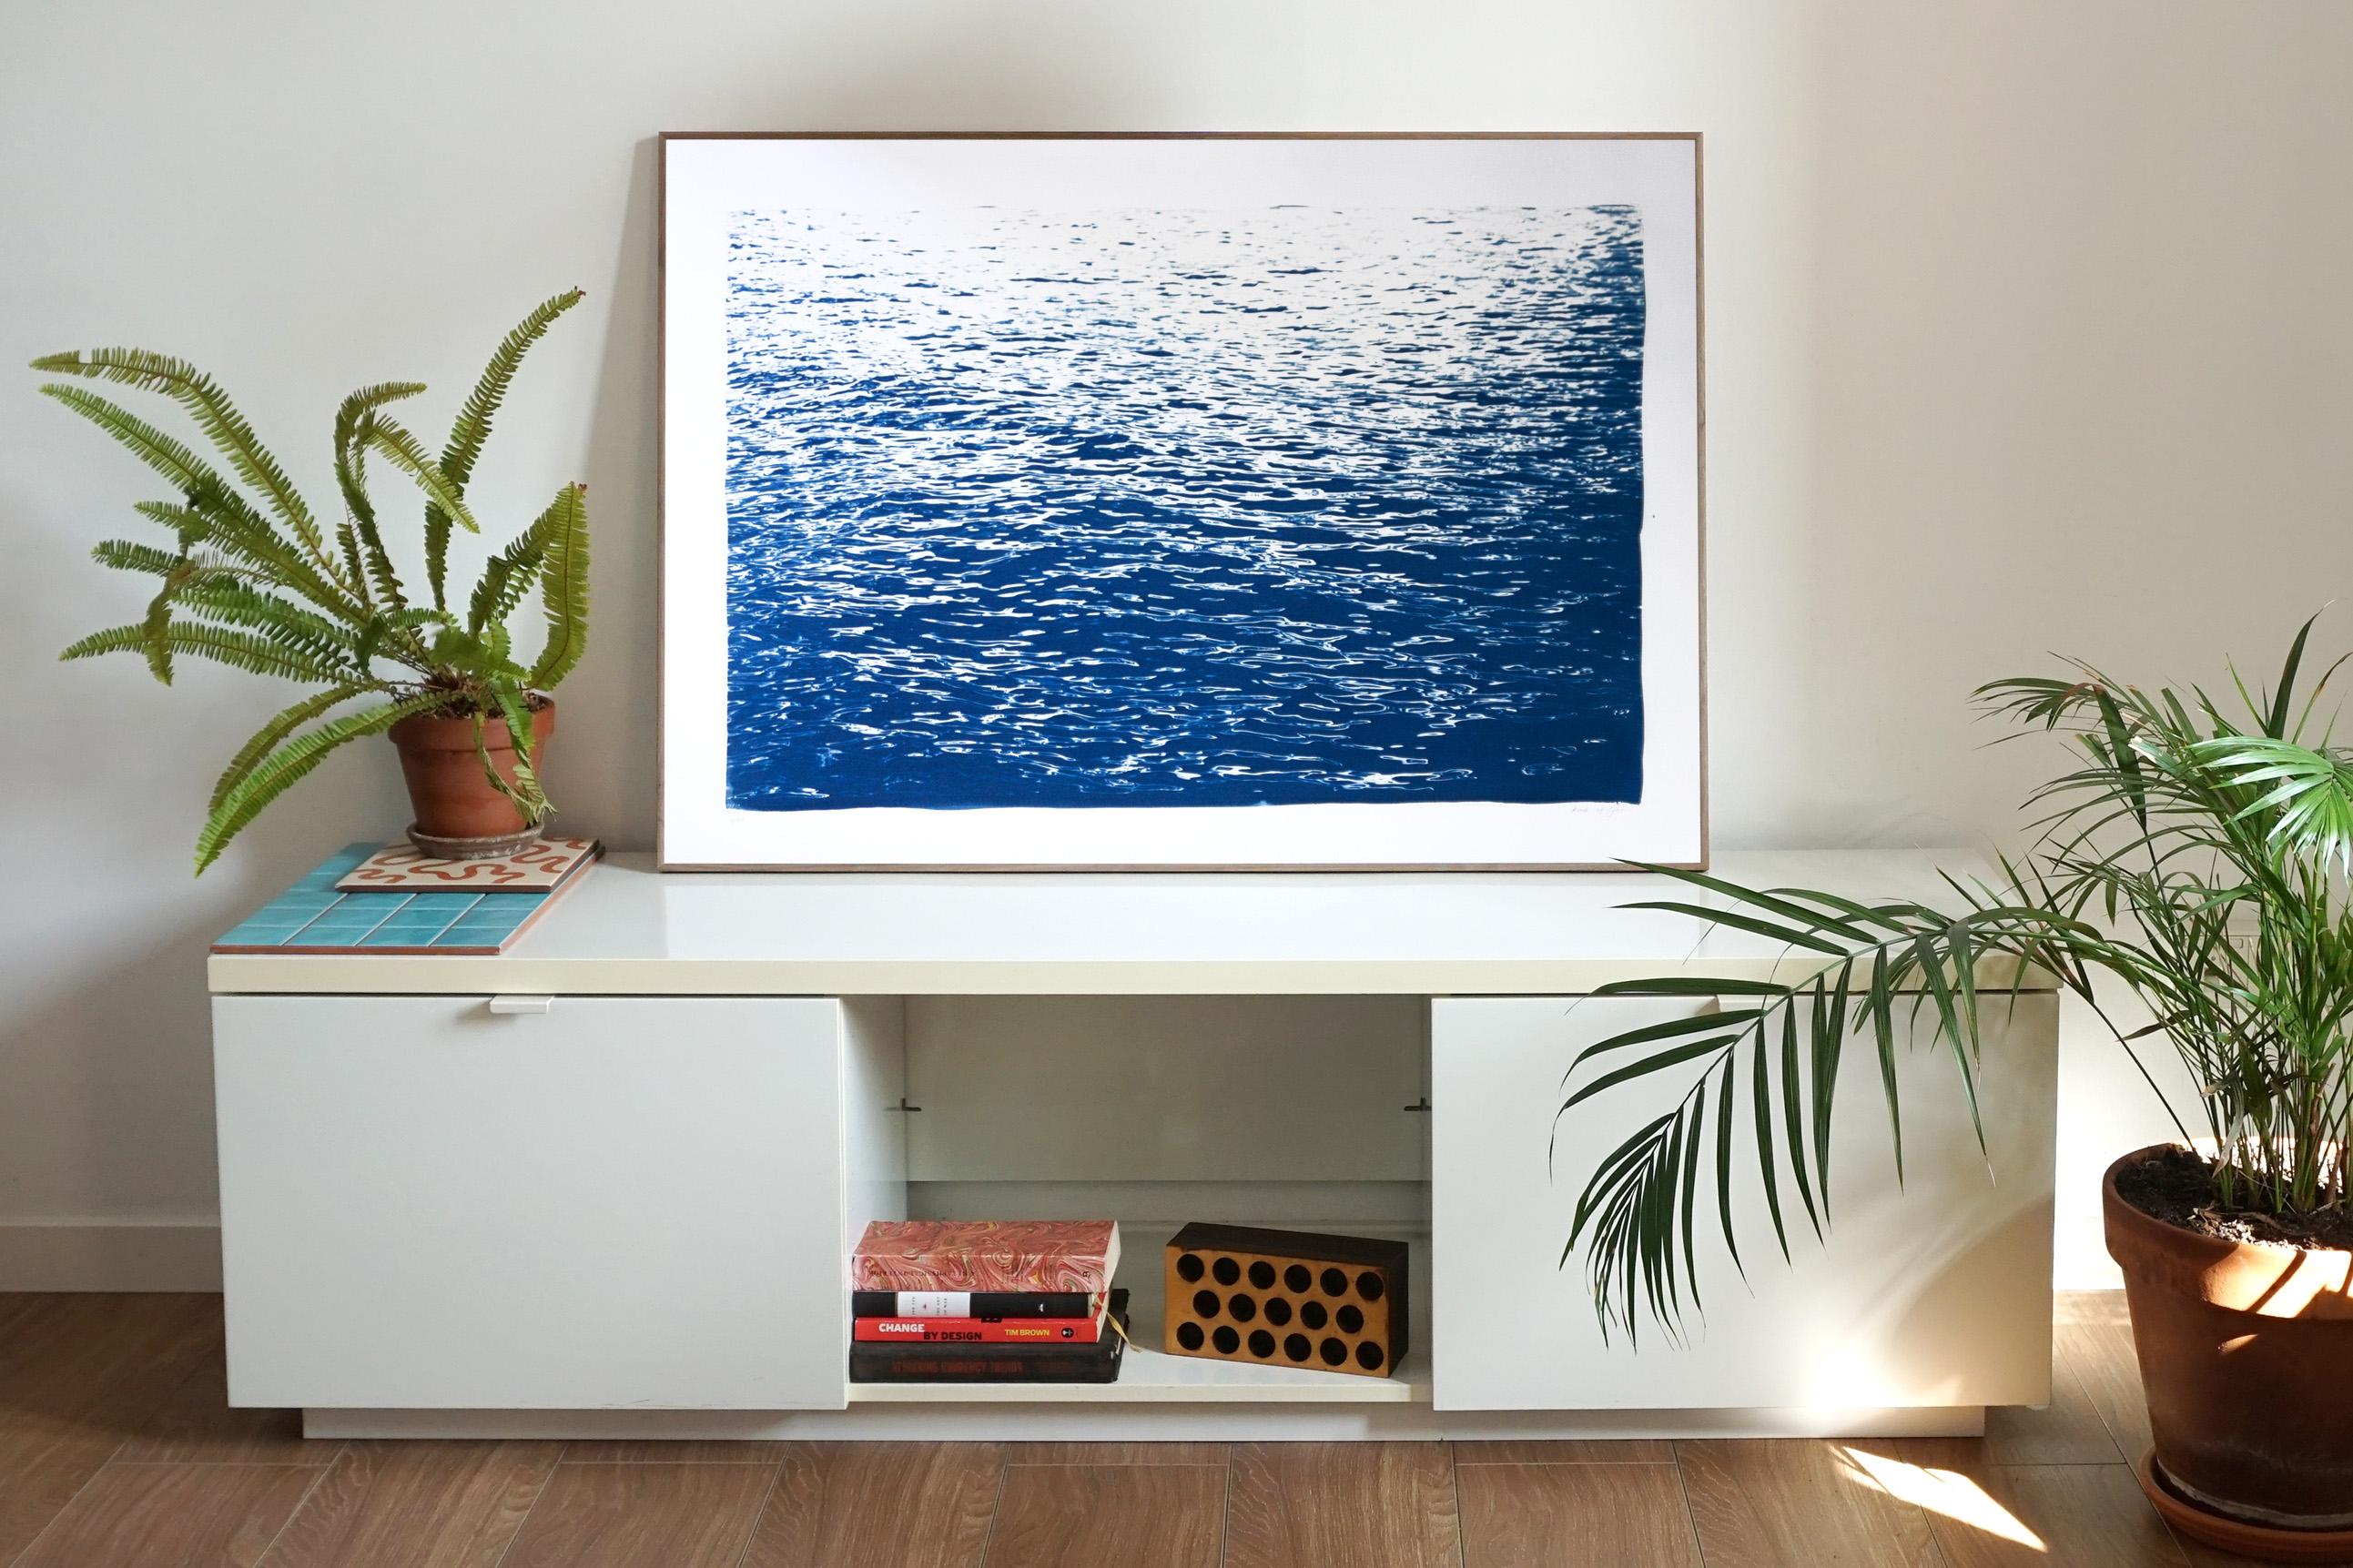 Des gouttes de mer en bleu Calming Sea Ripples, peinture nautique à la main, mer Méditerranée - Bleu Landscape Art par Kind of Cyan